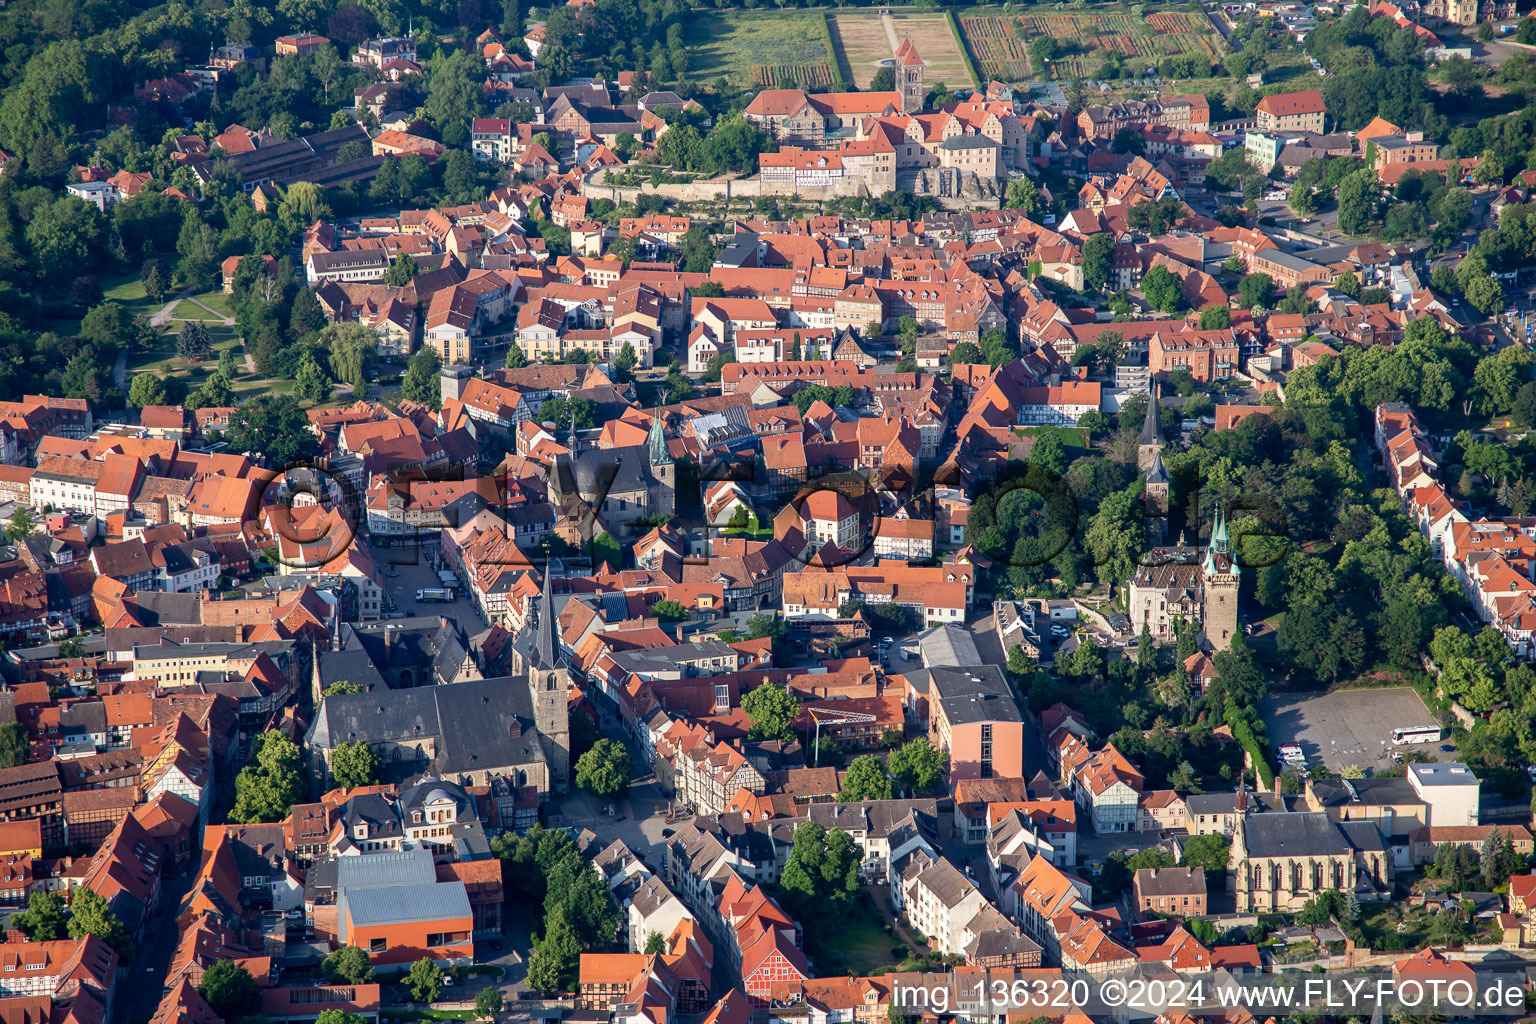 Vue aérienne de Vieille ville avec Burgberg-St. Wiperti-Münzenberg, collégiale Saint-Servatii et musée du château Quedlinburg à Quedlinburg dans le département Saxe-Anhalt, Allemagne